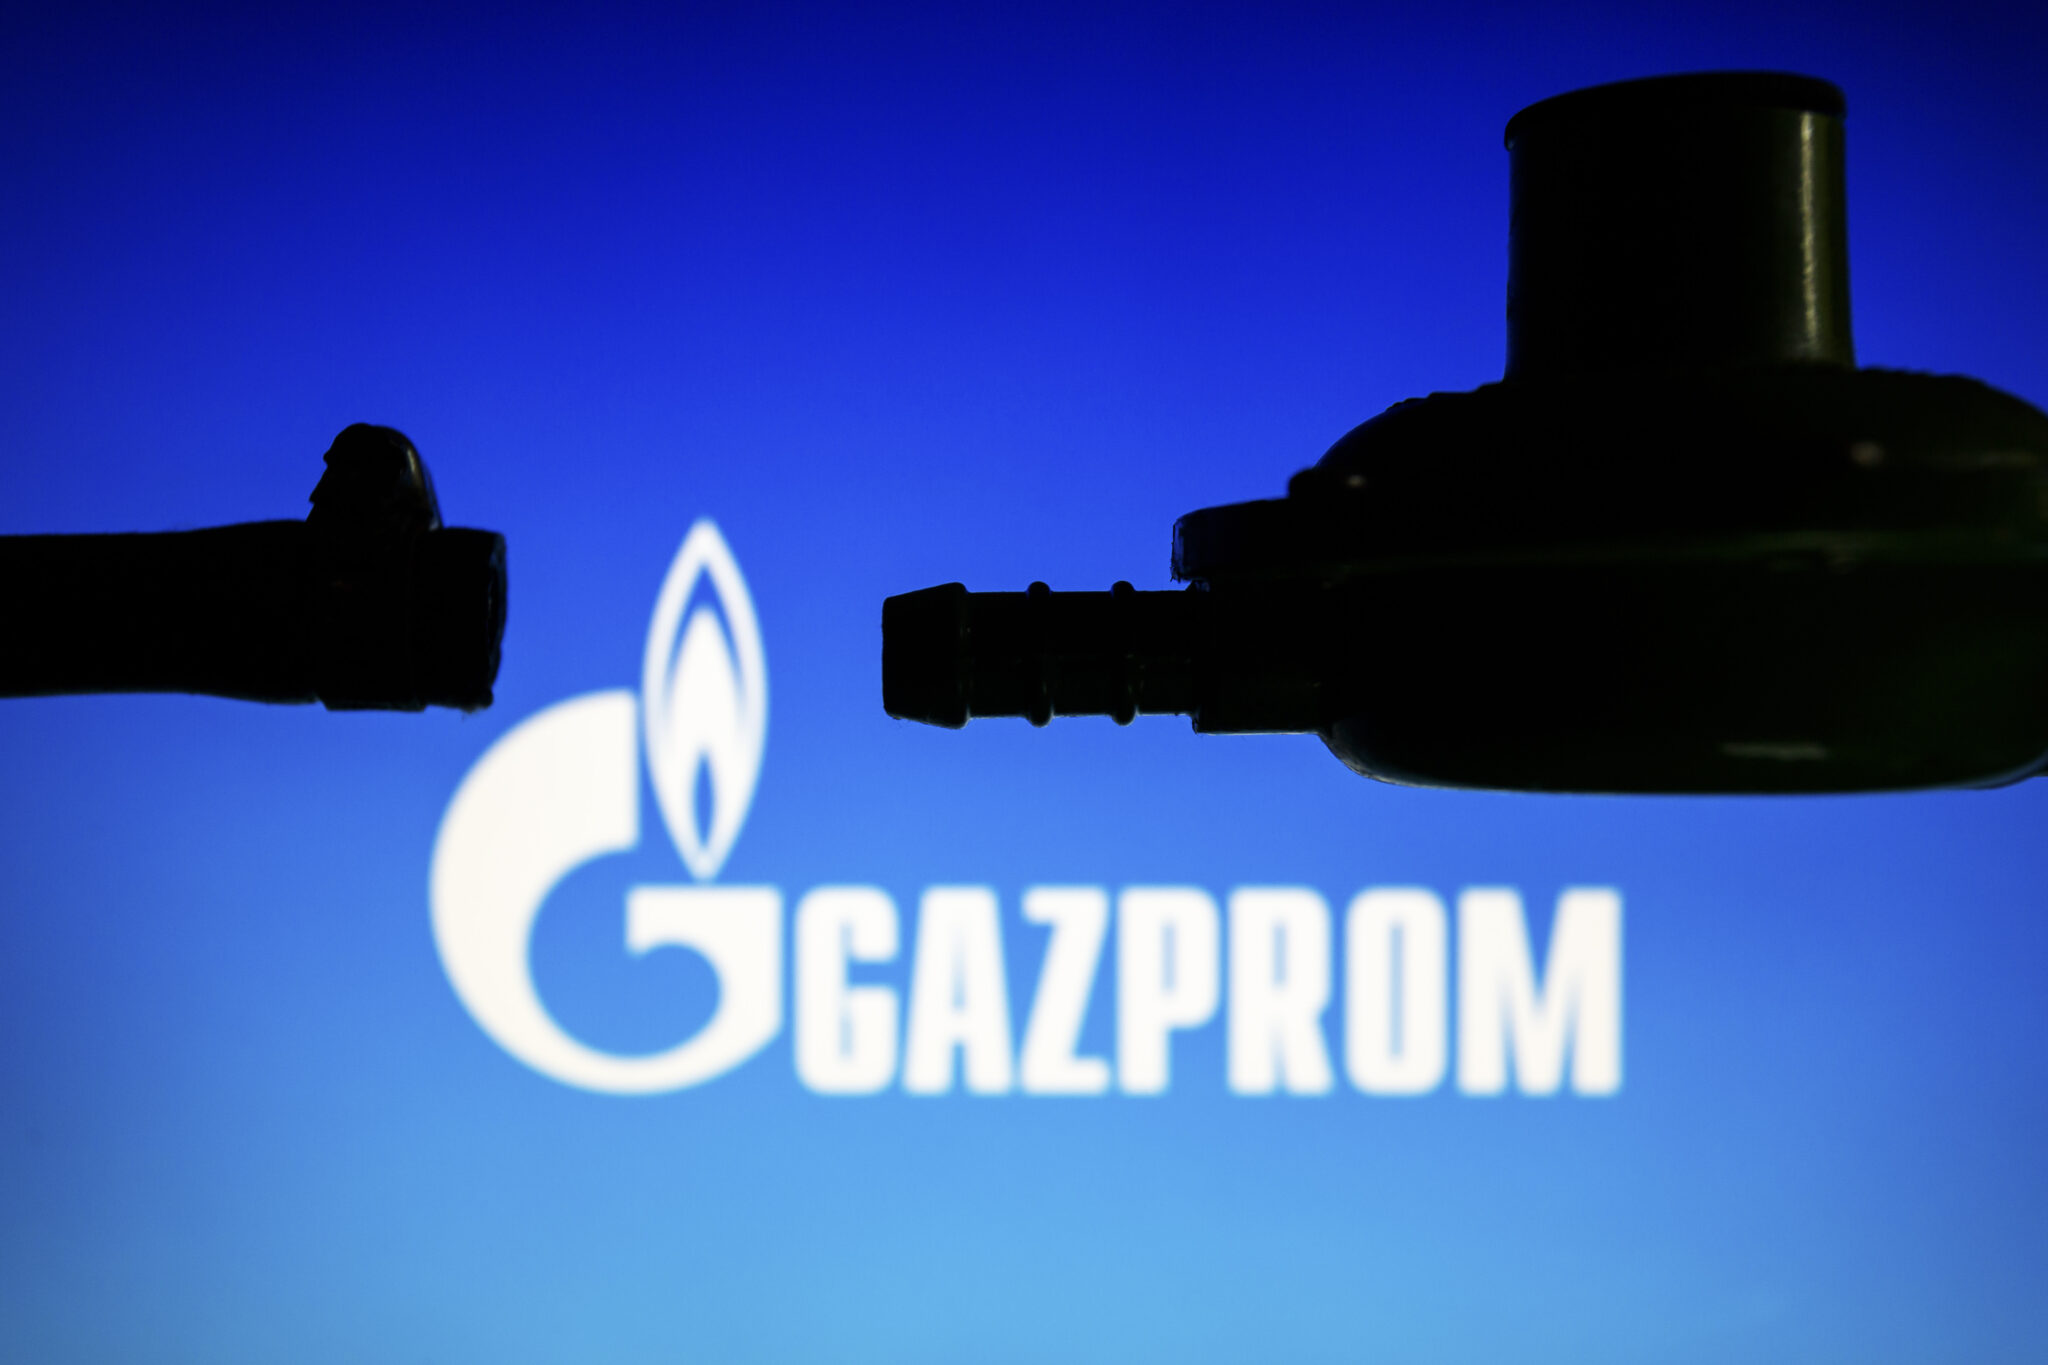 Логотип “Газпрома”. Фото Andre M. Chang/ZUMA Press Wire/Scanpix/LETA